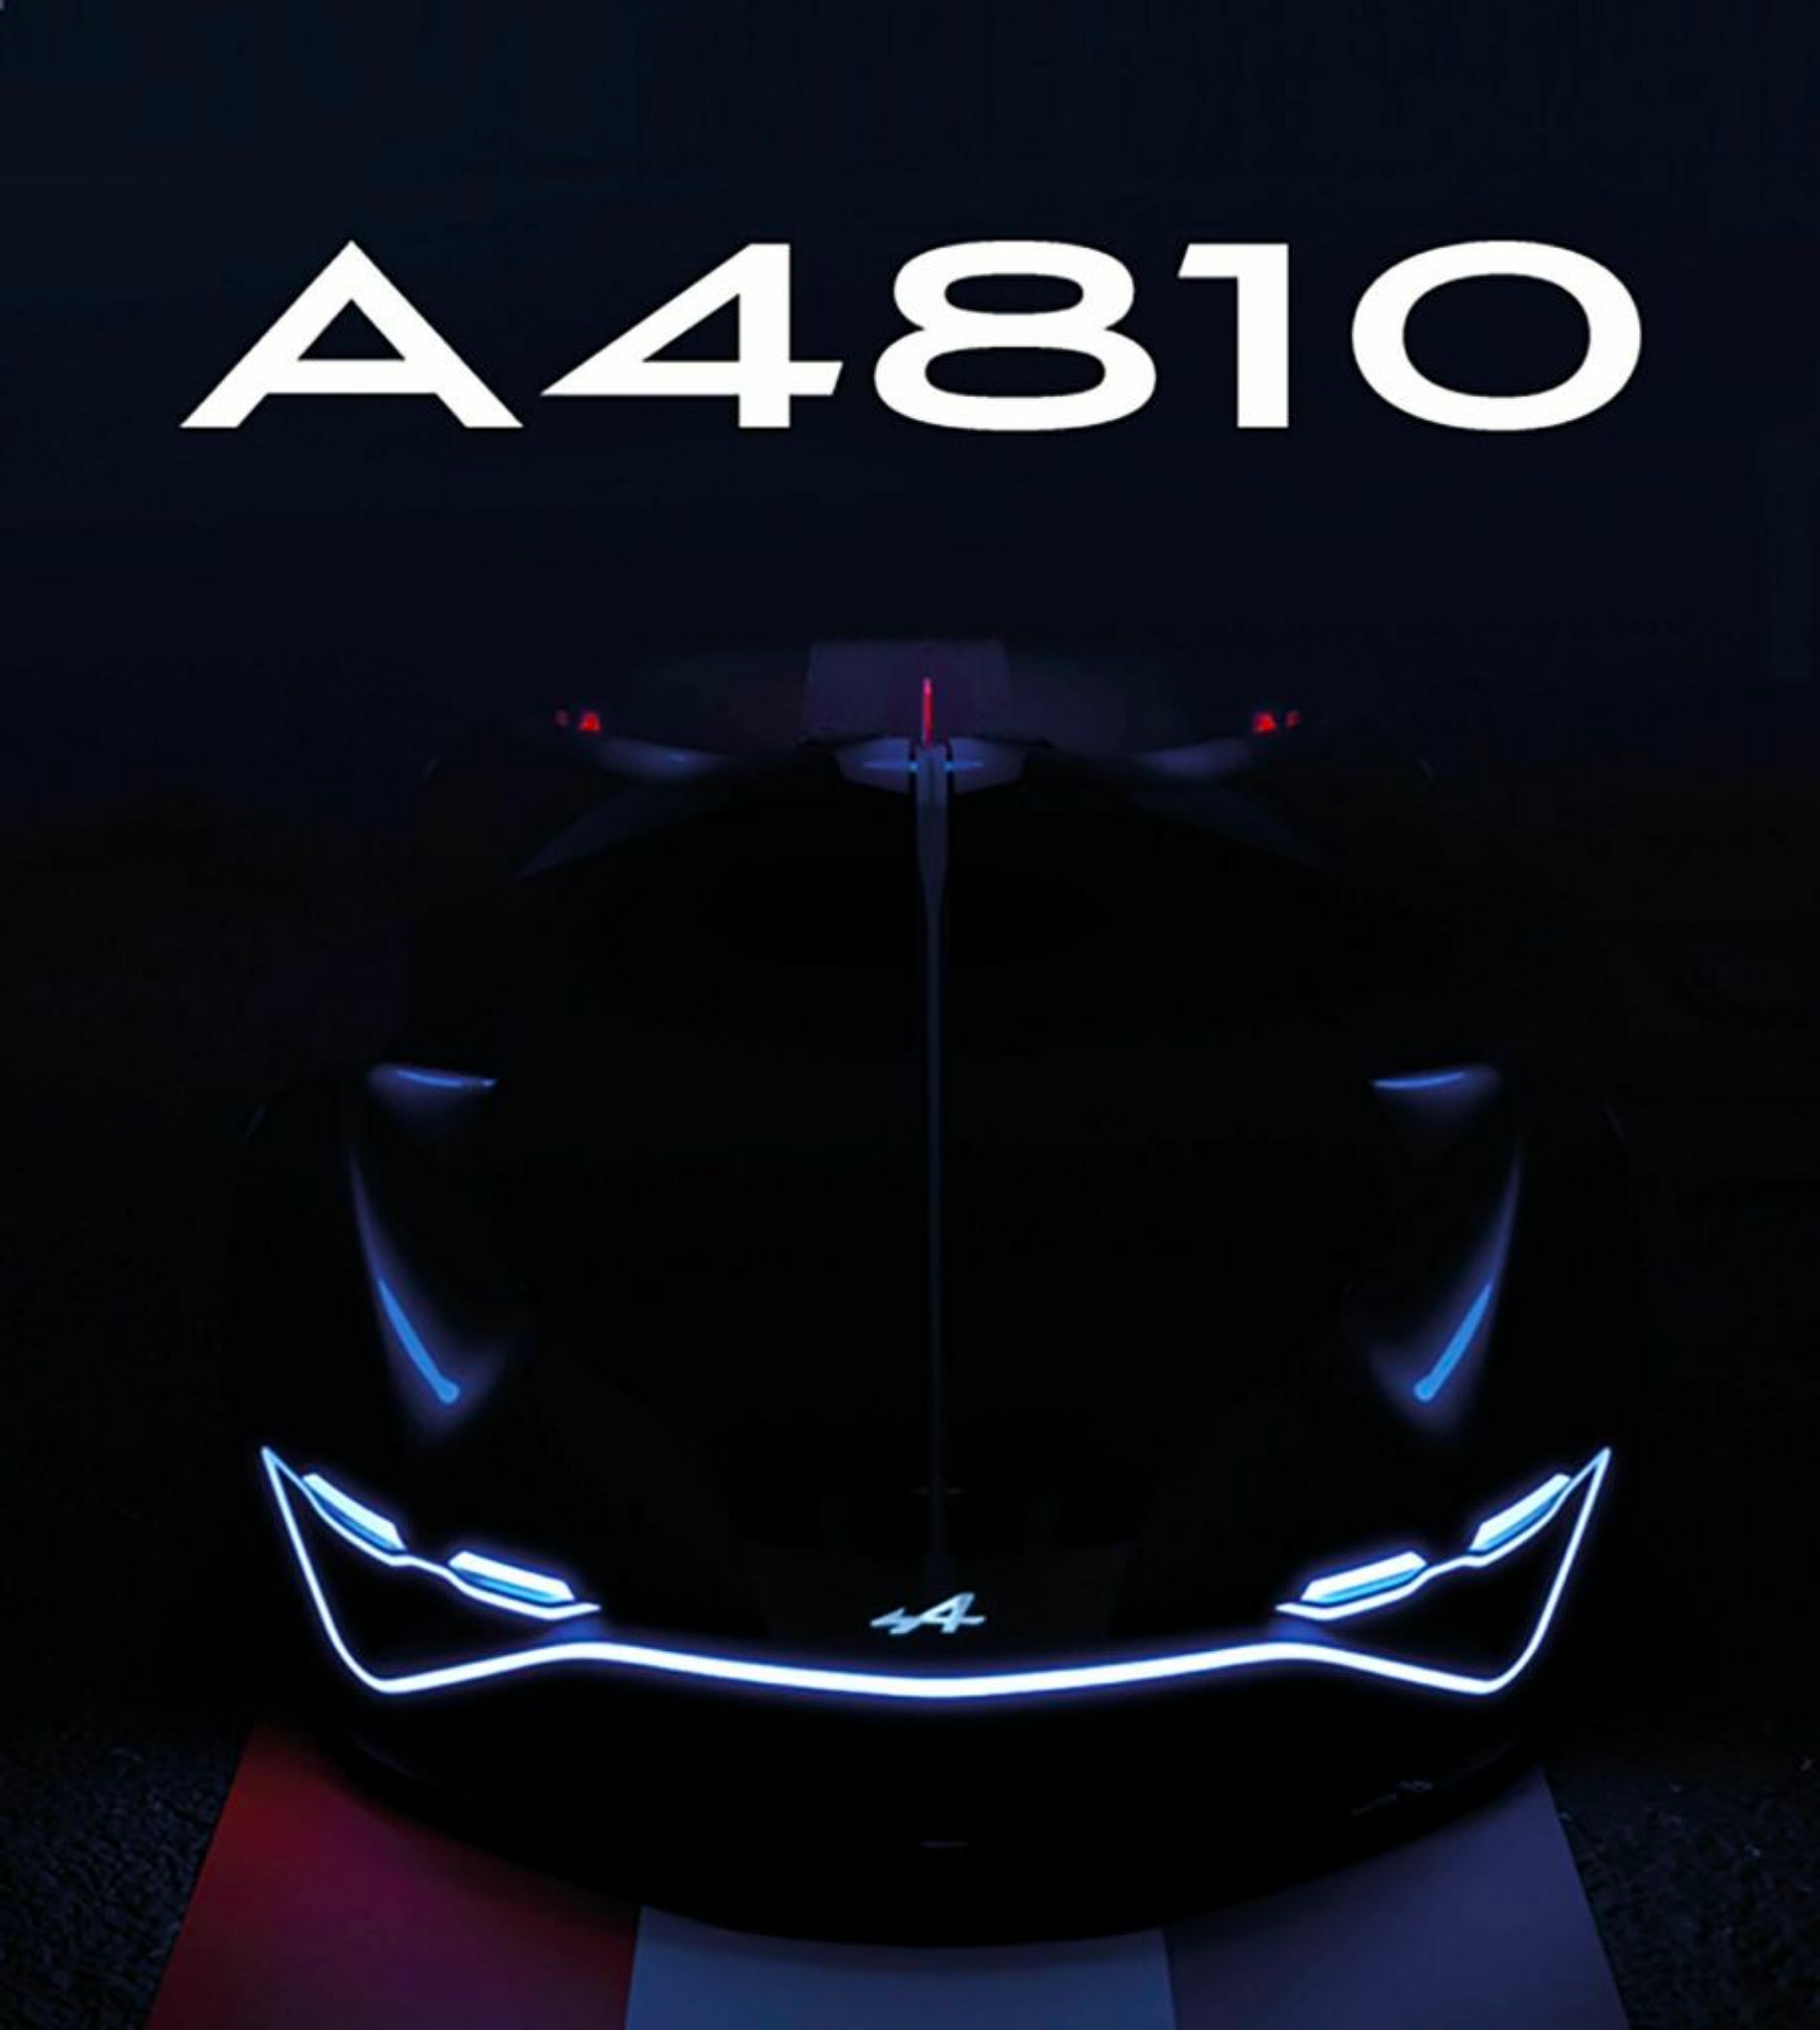 Alpine A4810 conceptual, alimentado por hidrógeno.